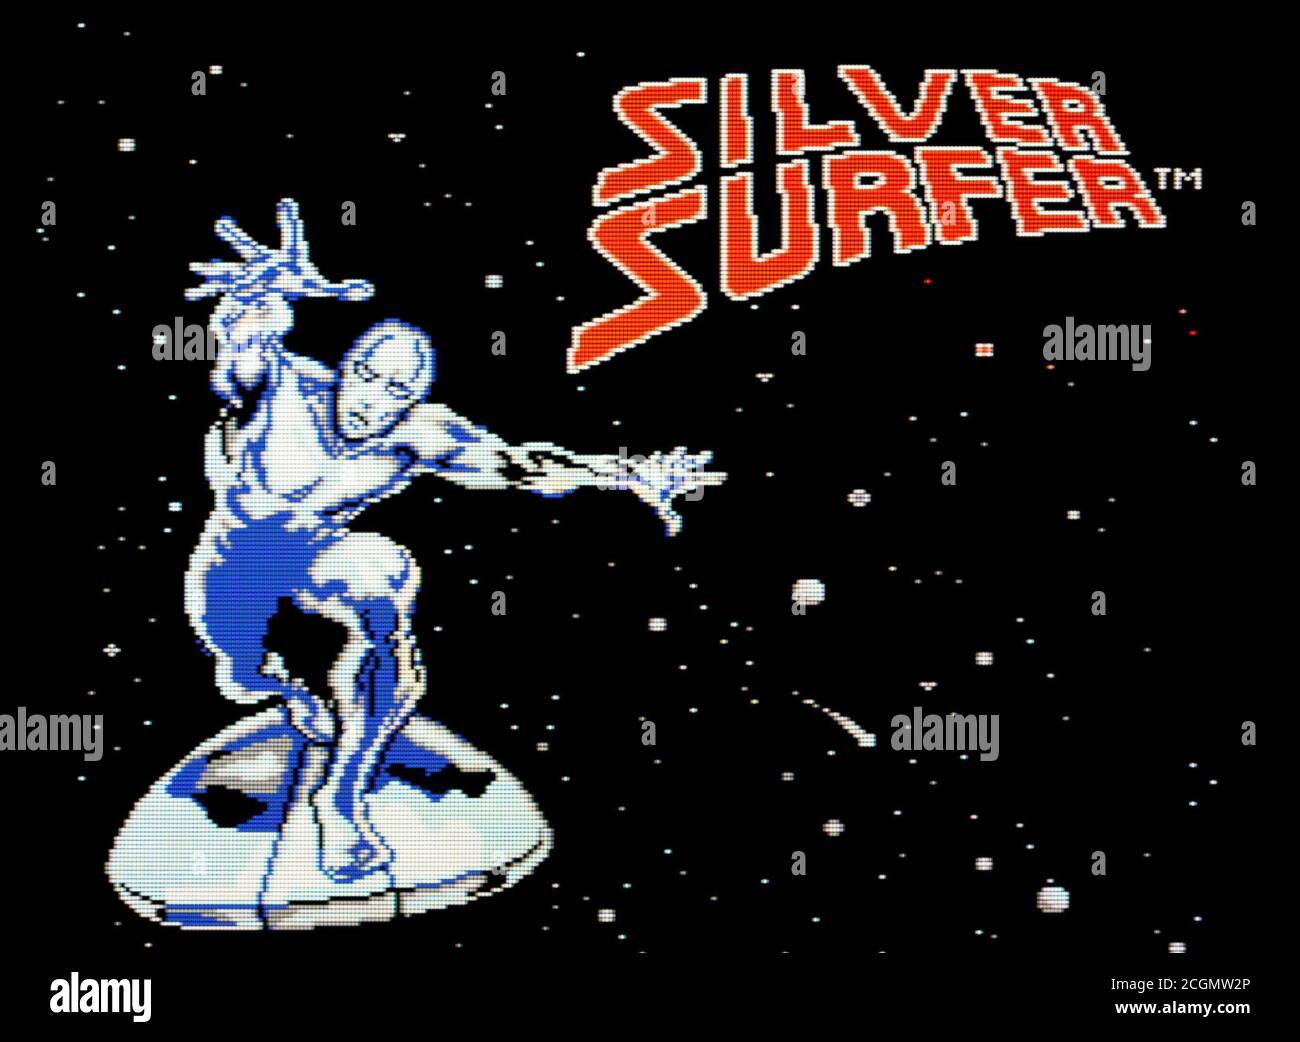 Silver Surfer - Nintendo Entertainment System - NES Videogame - Solo per uso editoriale Foto Stock